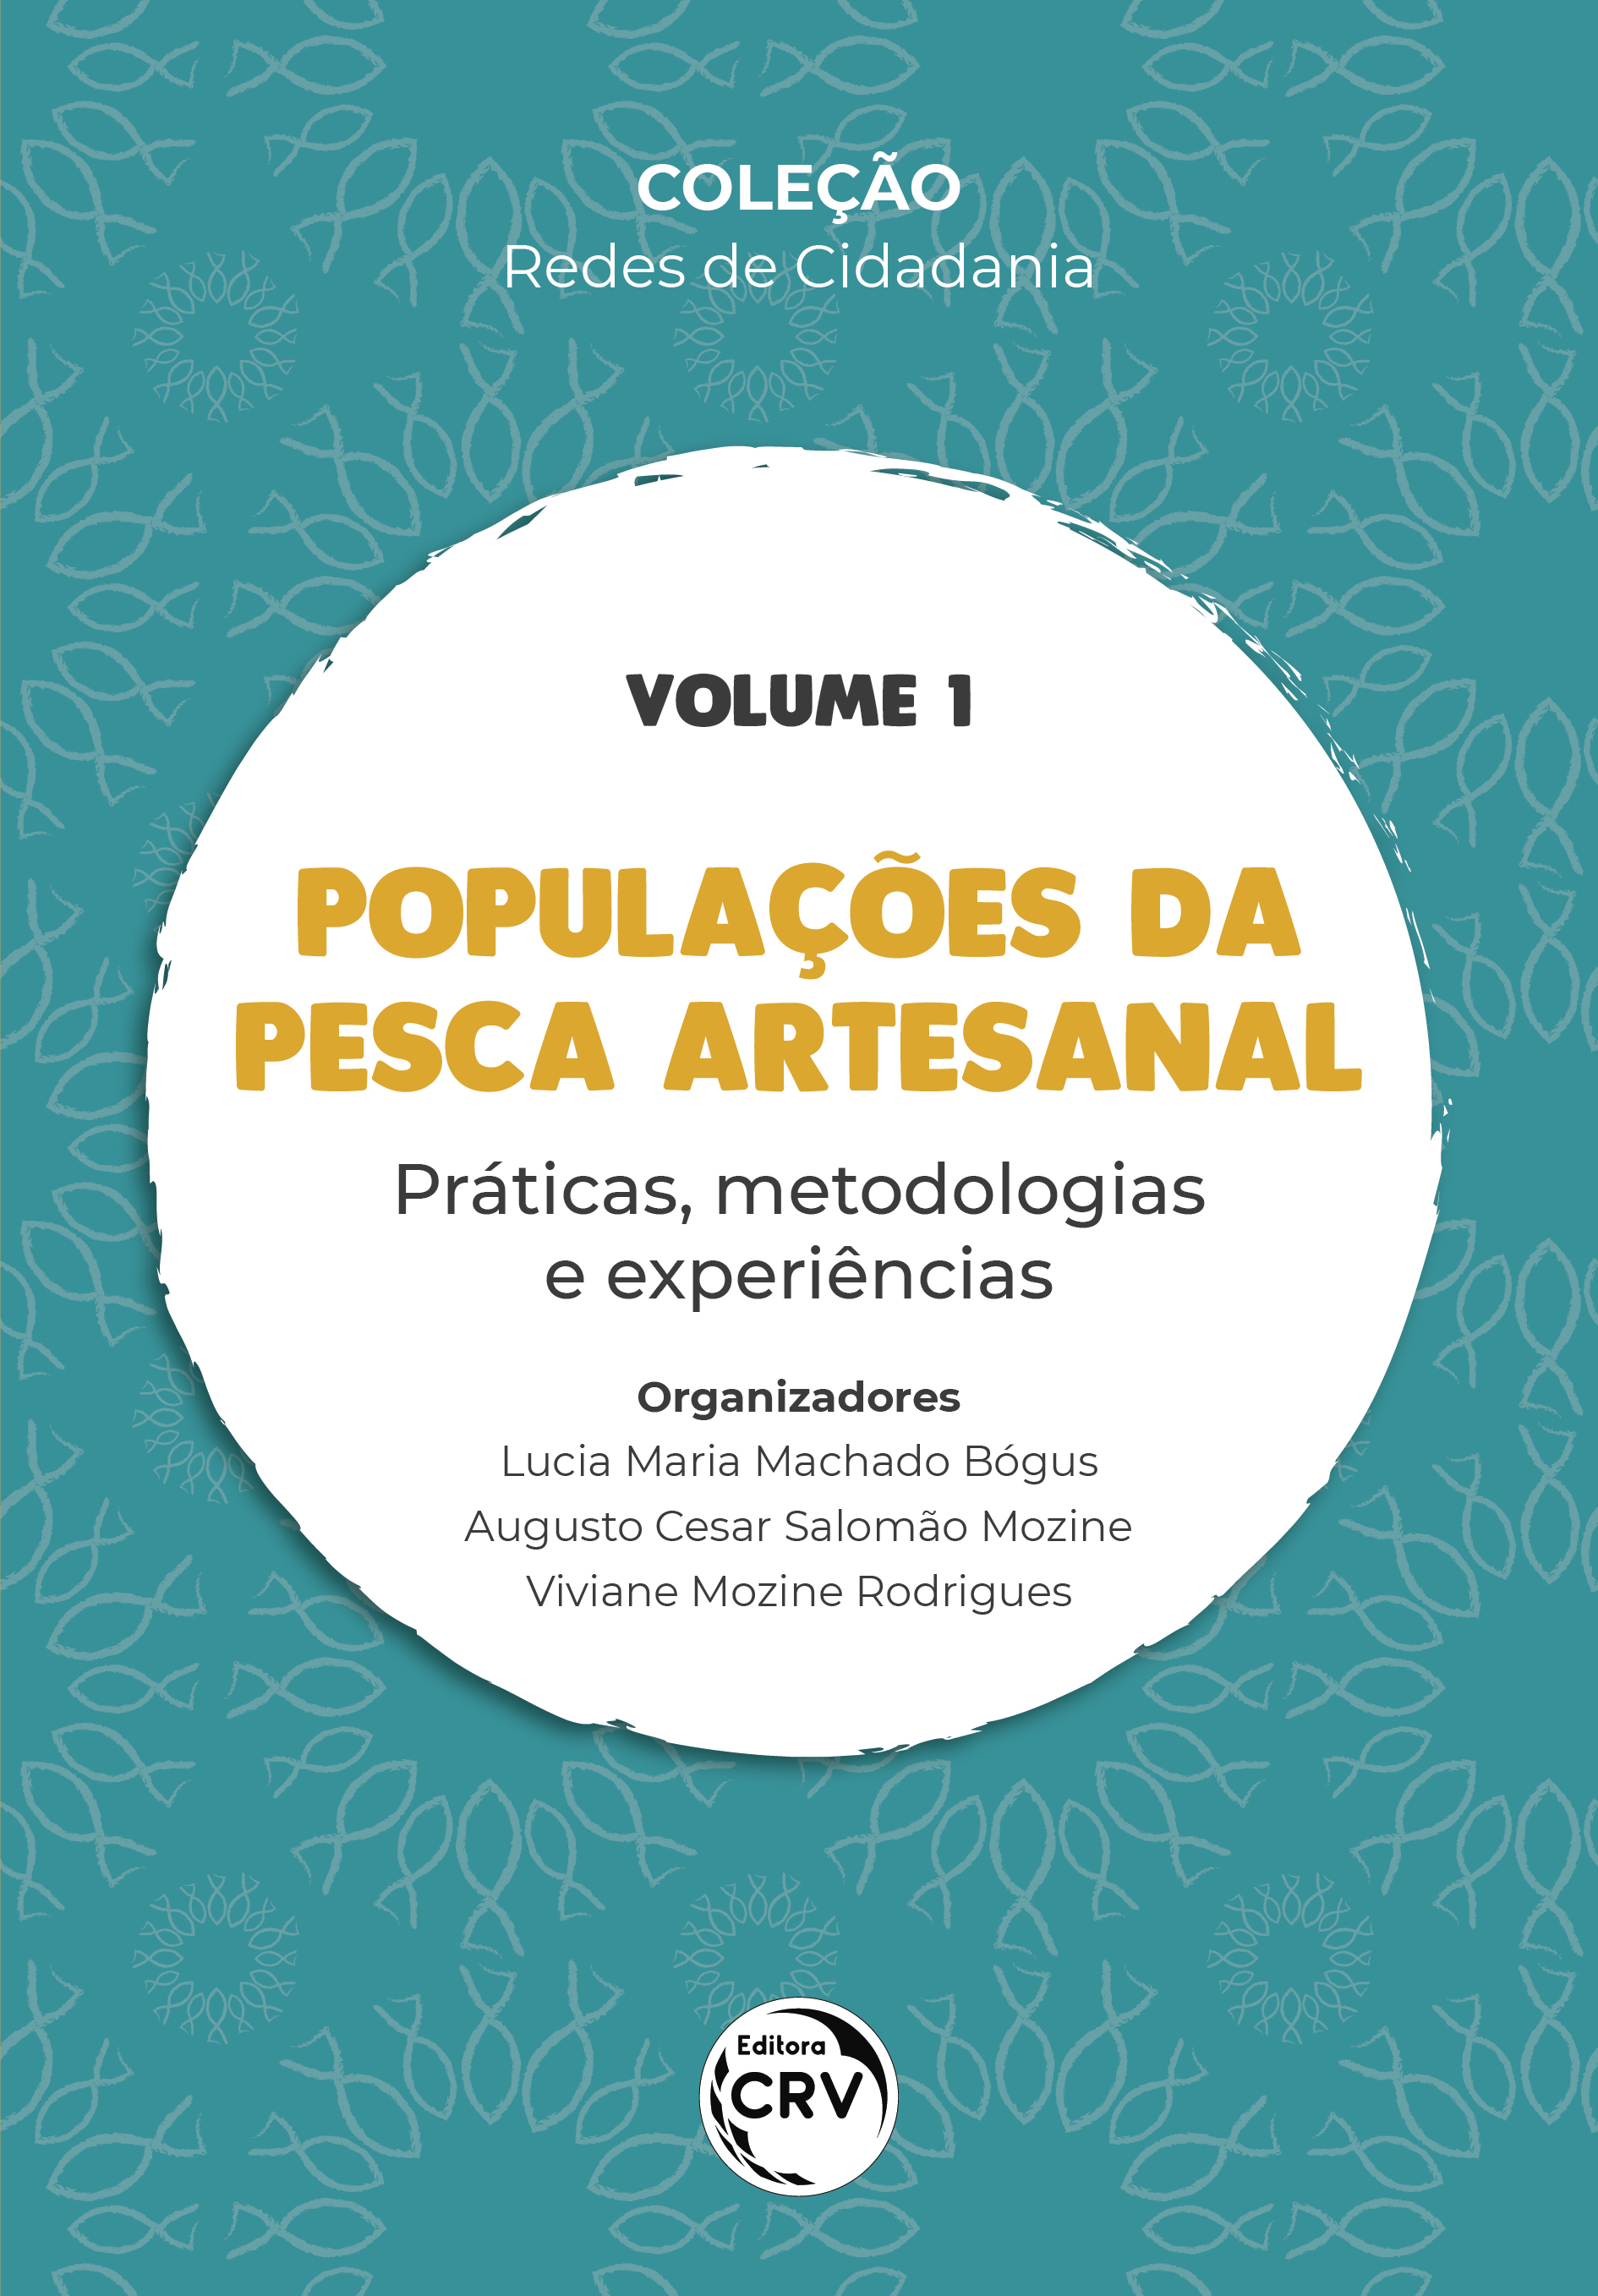 POPULAÇÕES DA PESCA ARTESANAL:<br> práticas, metodologias e experiências<br><br> Coleção Redes de Cidadania – Volume 1